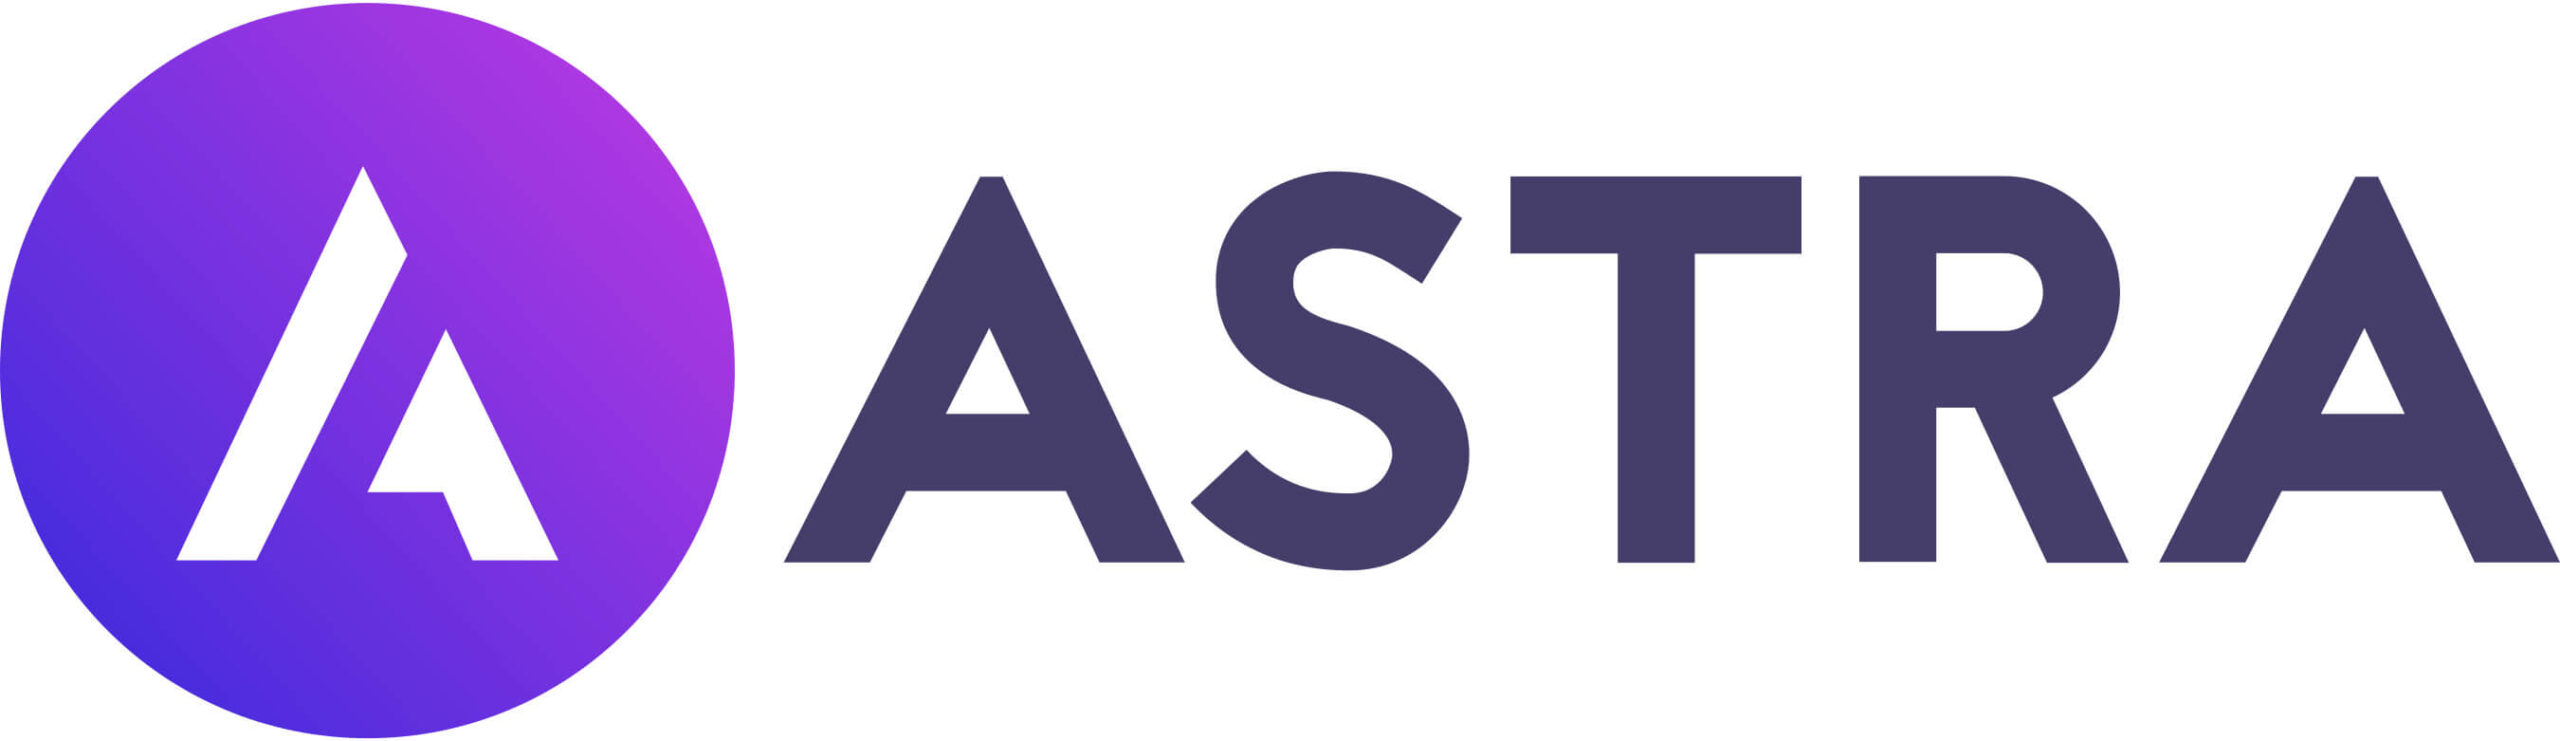 WP Astra Logo